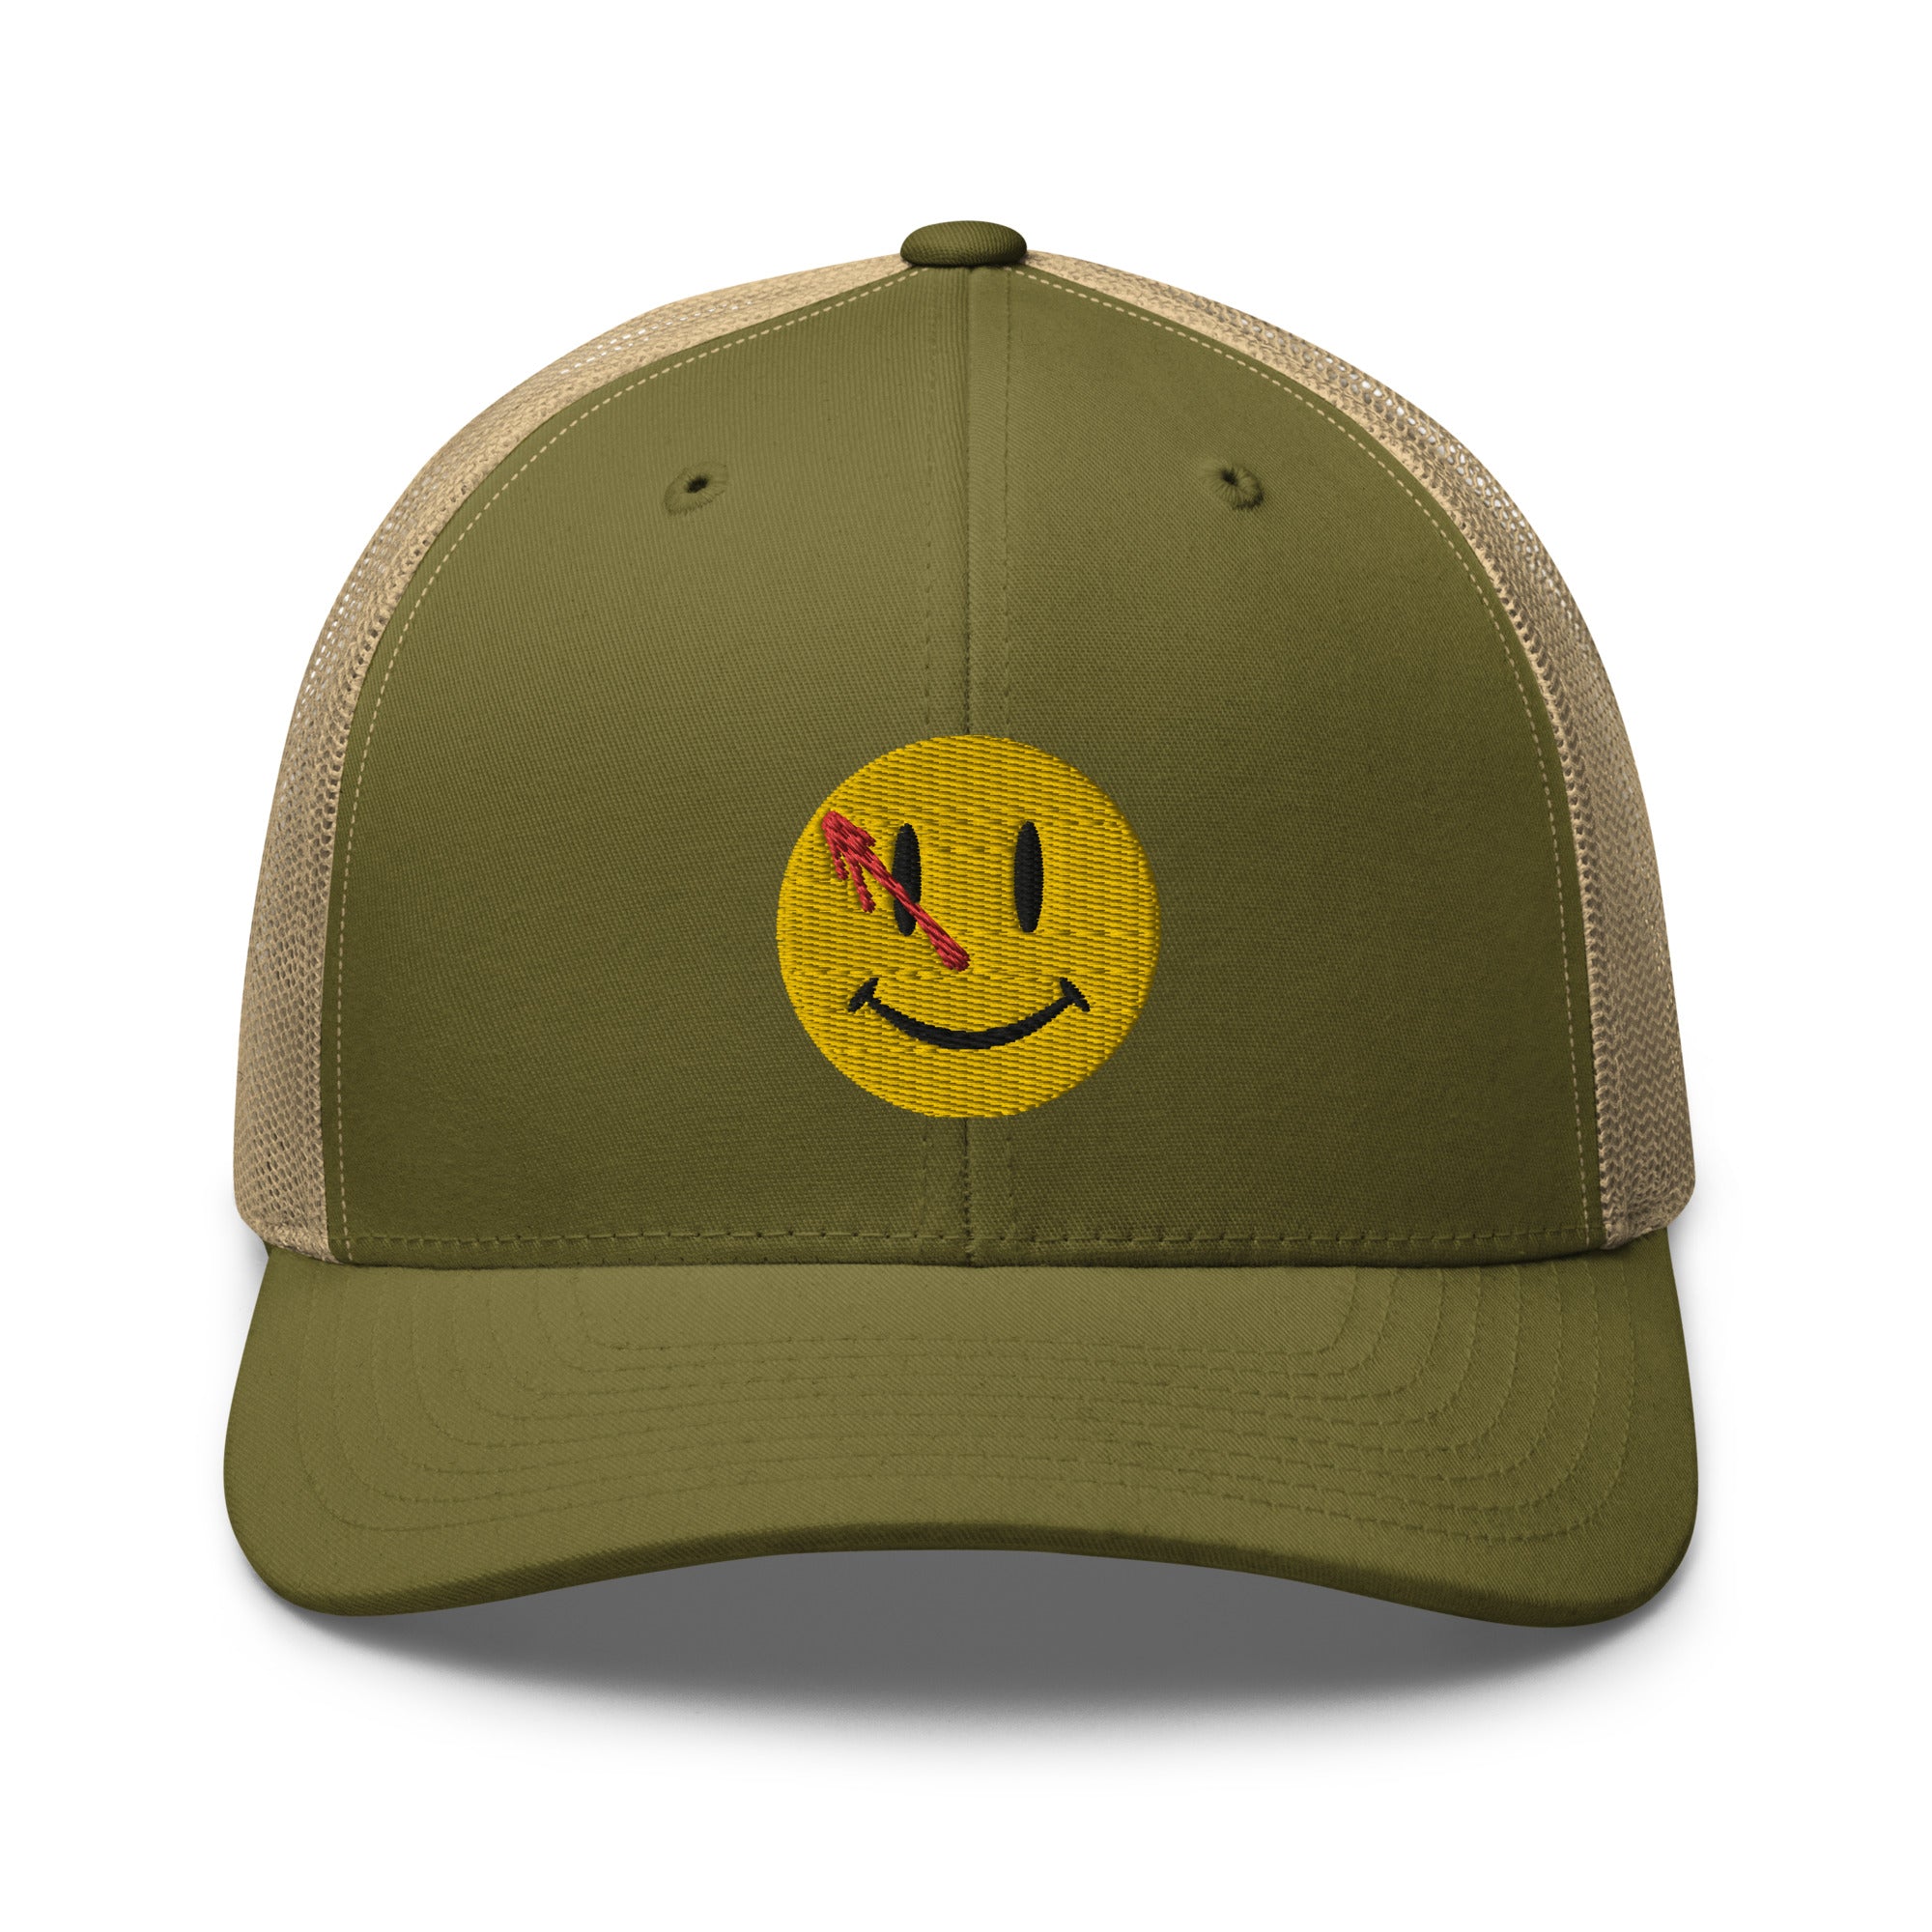 Watchmen Smiley Face Trucker Cap